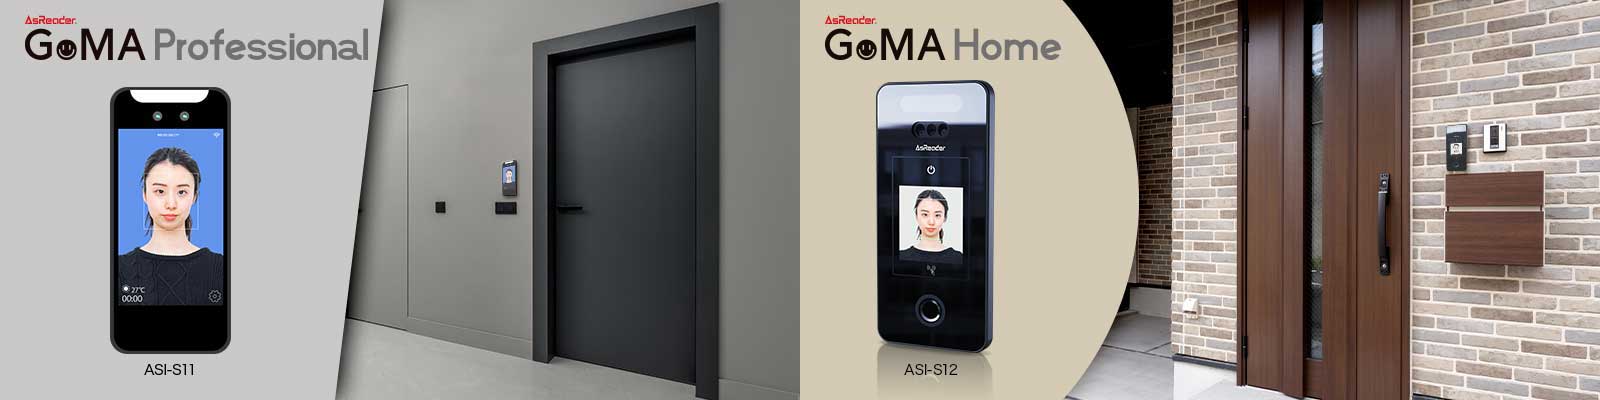 顔認証ハードウェアとして、セキュリティを強化した「AsReader GoMA Home / GoMA Professional」の2機種を発表